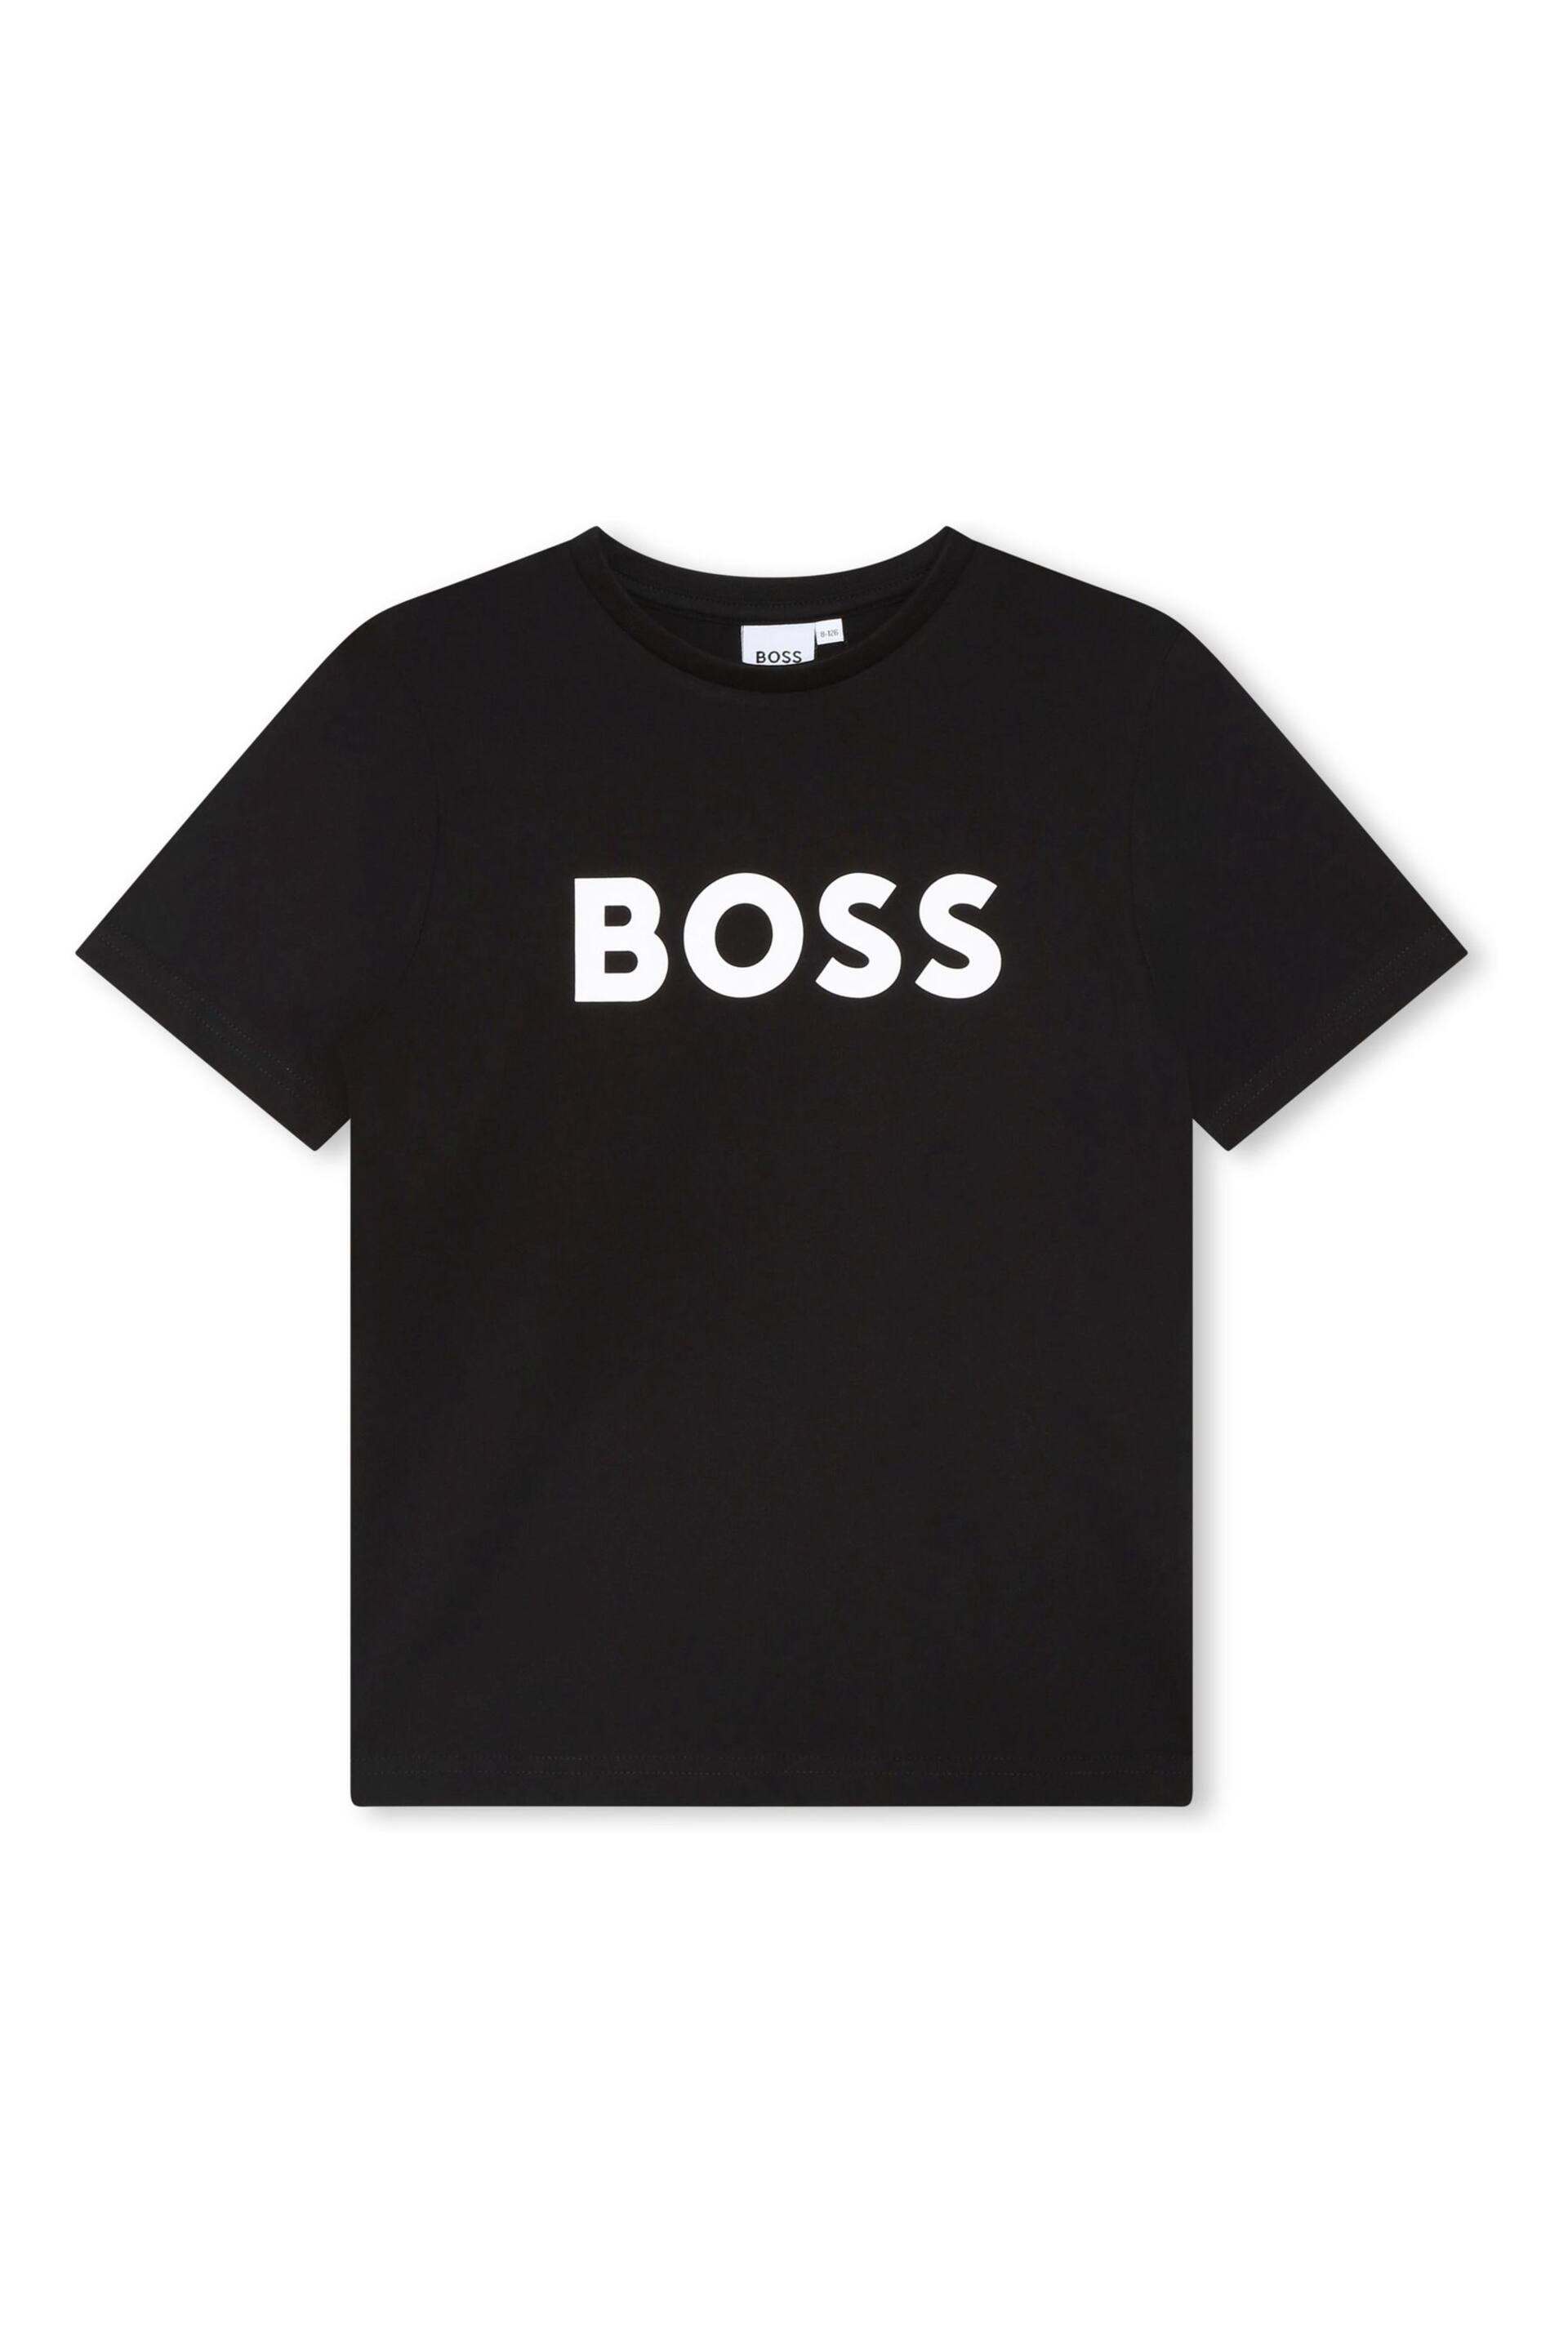 BOSS Black Short Sleeved Logo T-Shirt - Image 2 of 3